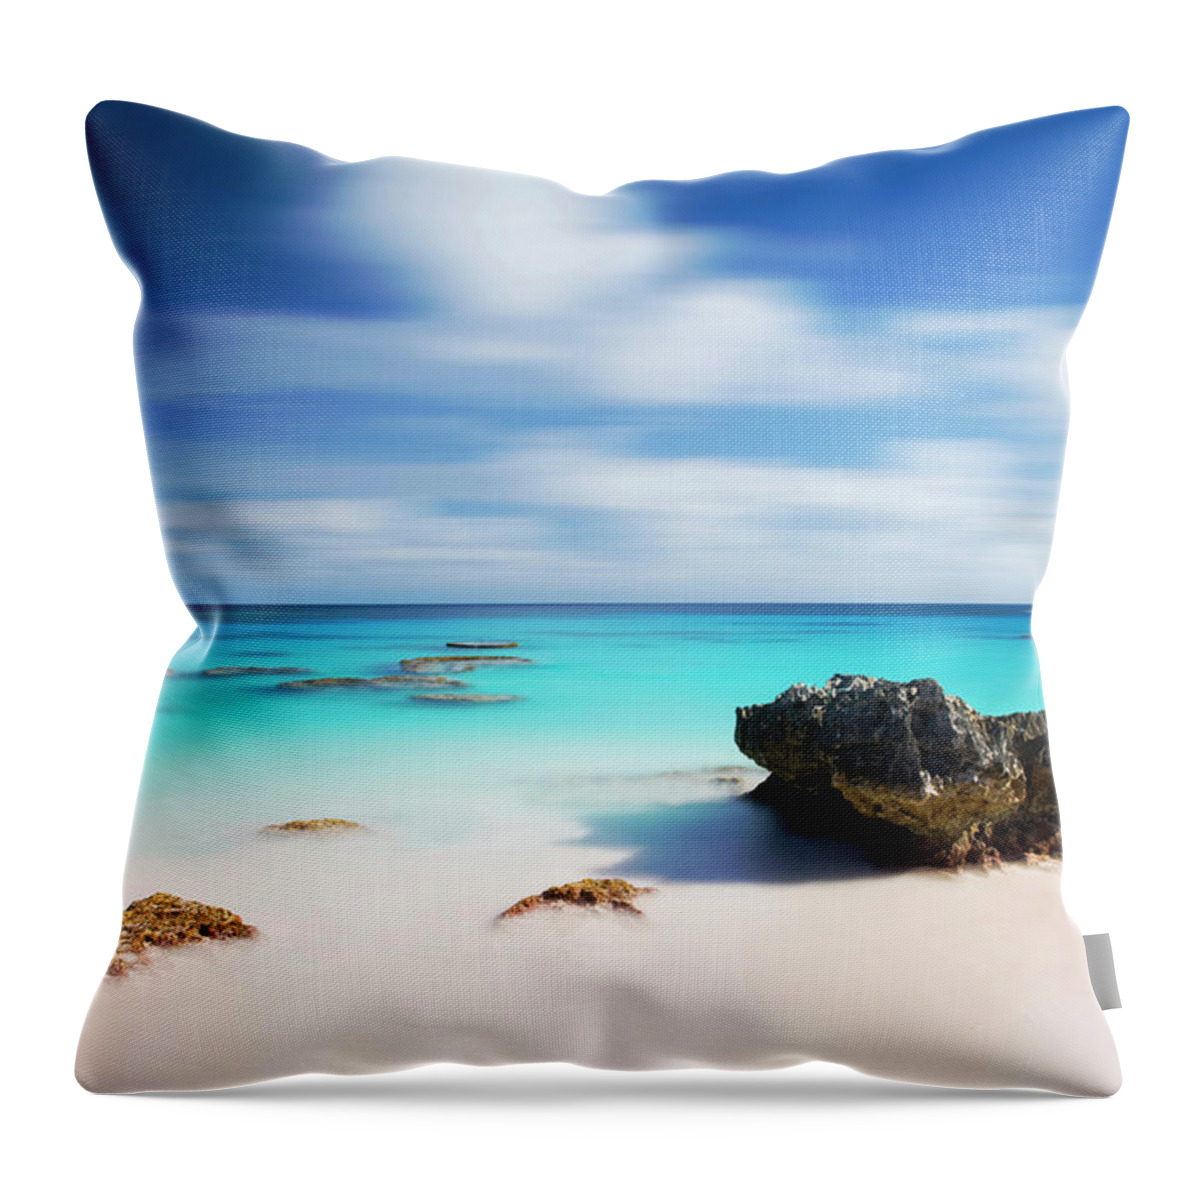 Estock Throw Pillow featuring the digital art Bermuda, Warwick Parish, South Shore Park, Caribbean, Caribbean Sea, Atlantic Ocean, Chaplin Bay Beach by Massimo Ripani